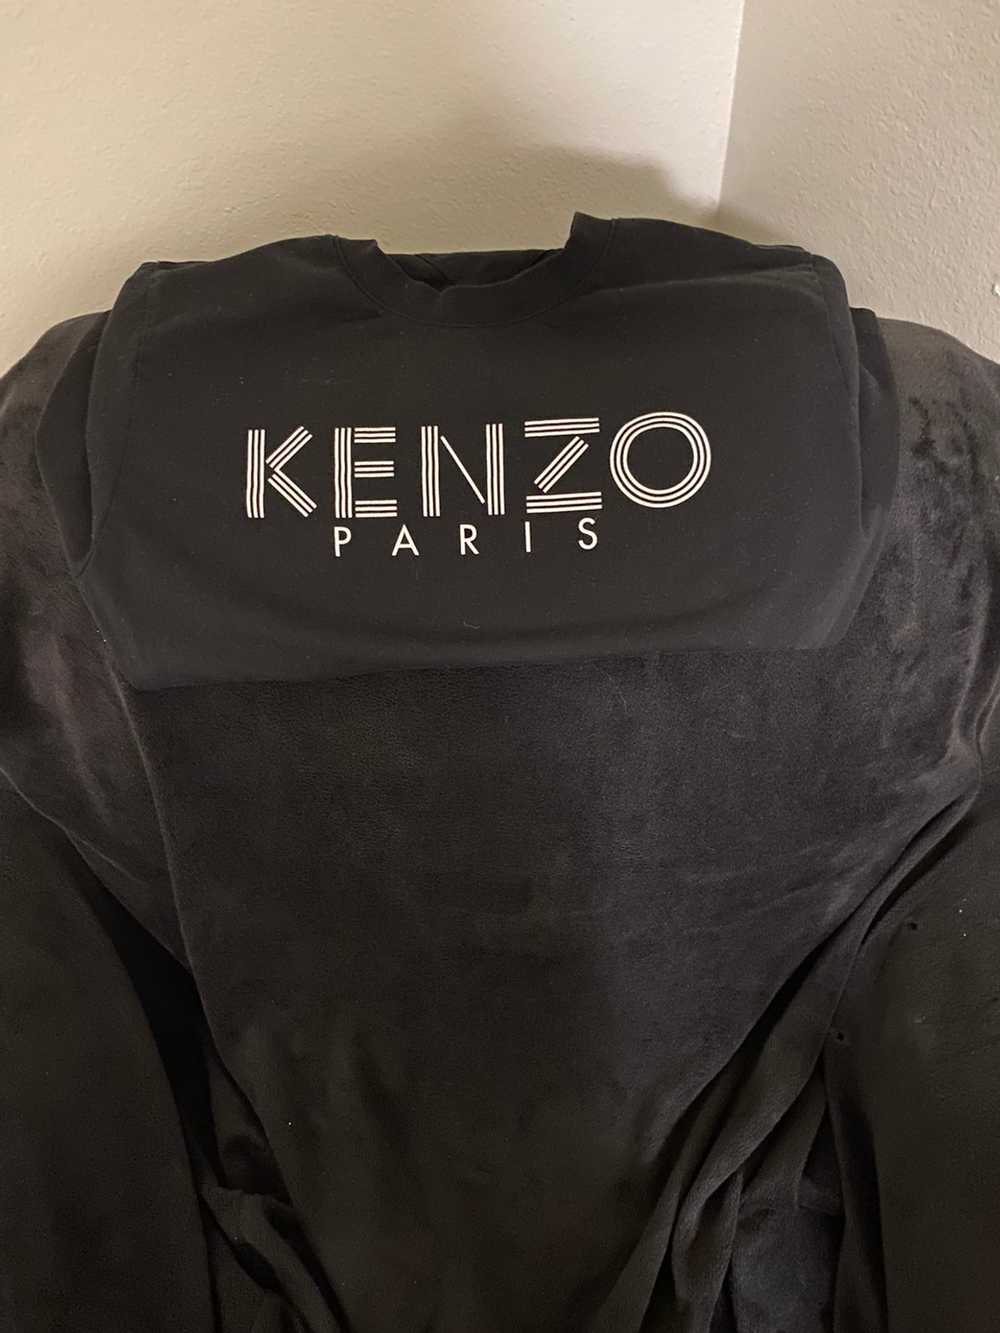 Kenzo Kenzo Tee - image 2